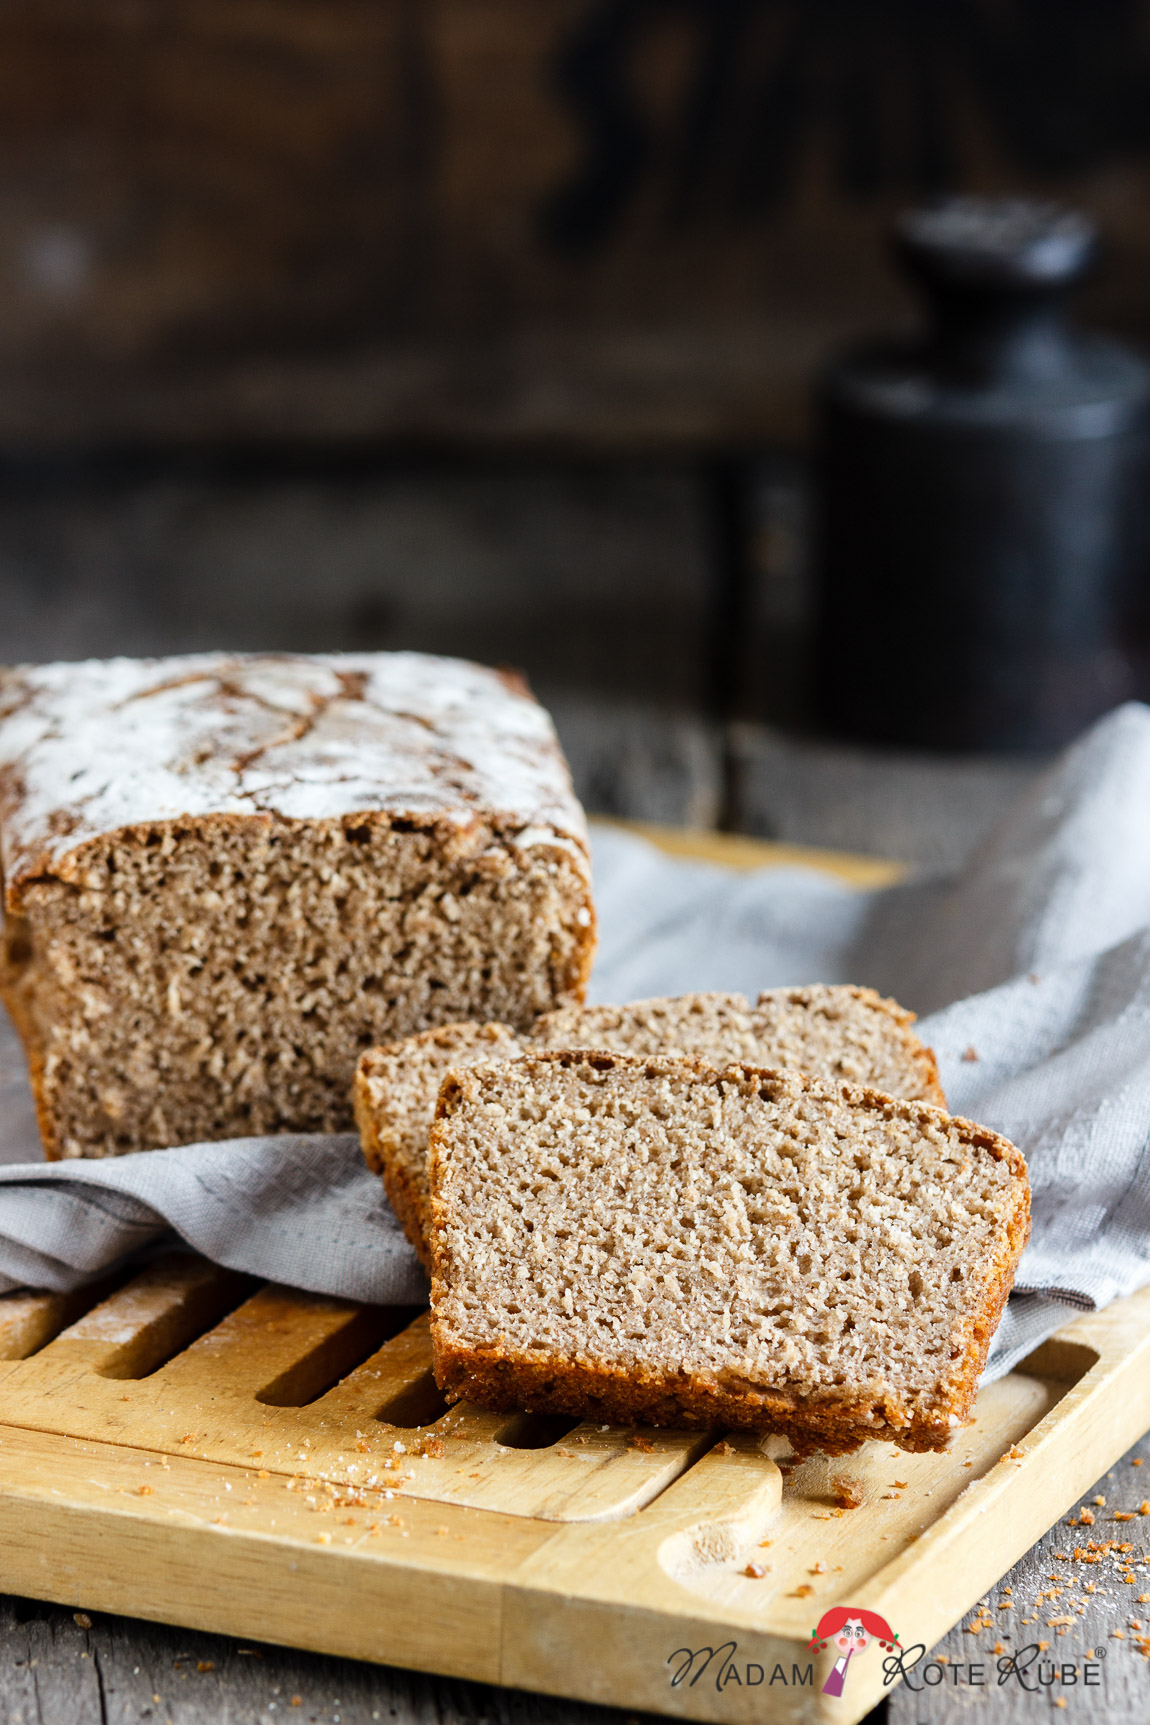 Emmer-Sauerteig-Brot mit Joghurt - eine alte Getreidesorte liegt im Trend